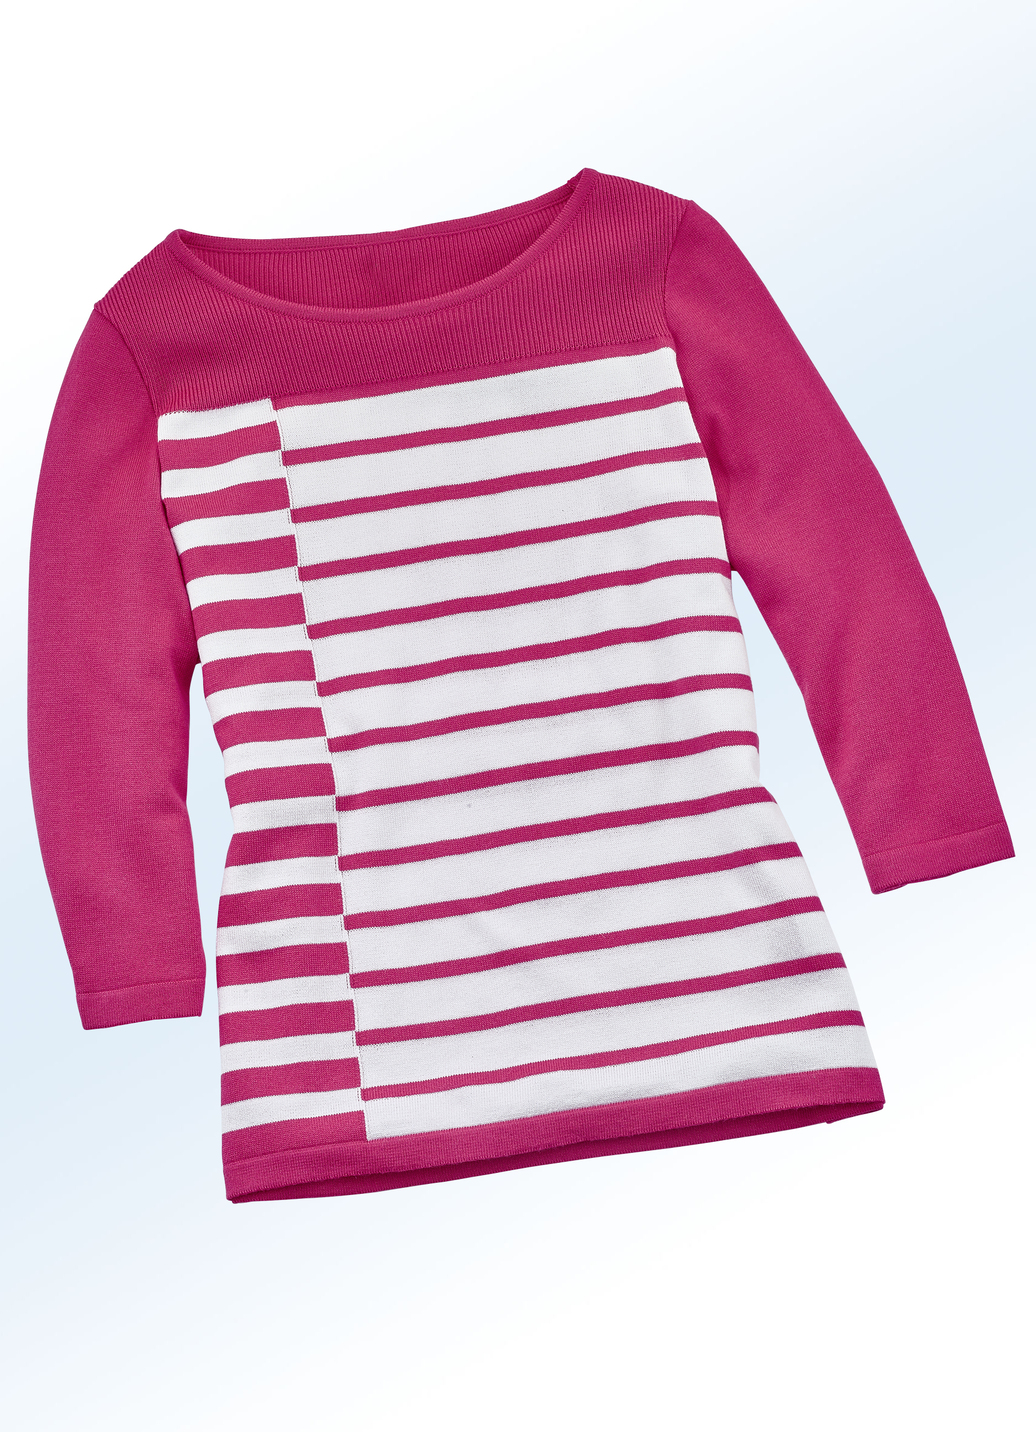 Pullover in hochwertiger Qualität mit Seide, Pink-Weiss, Größe 46 von BADER